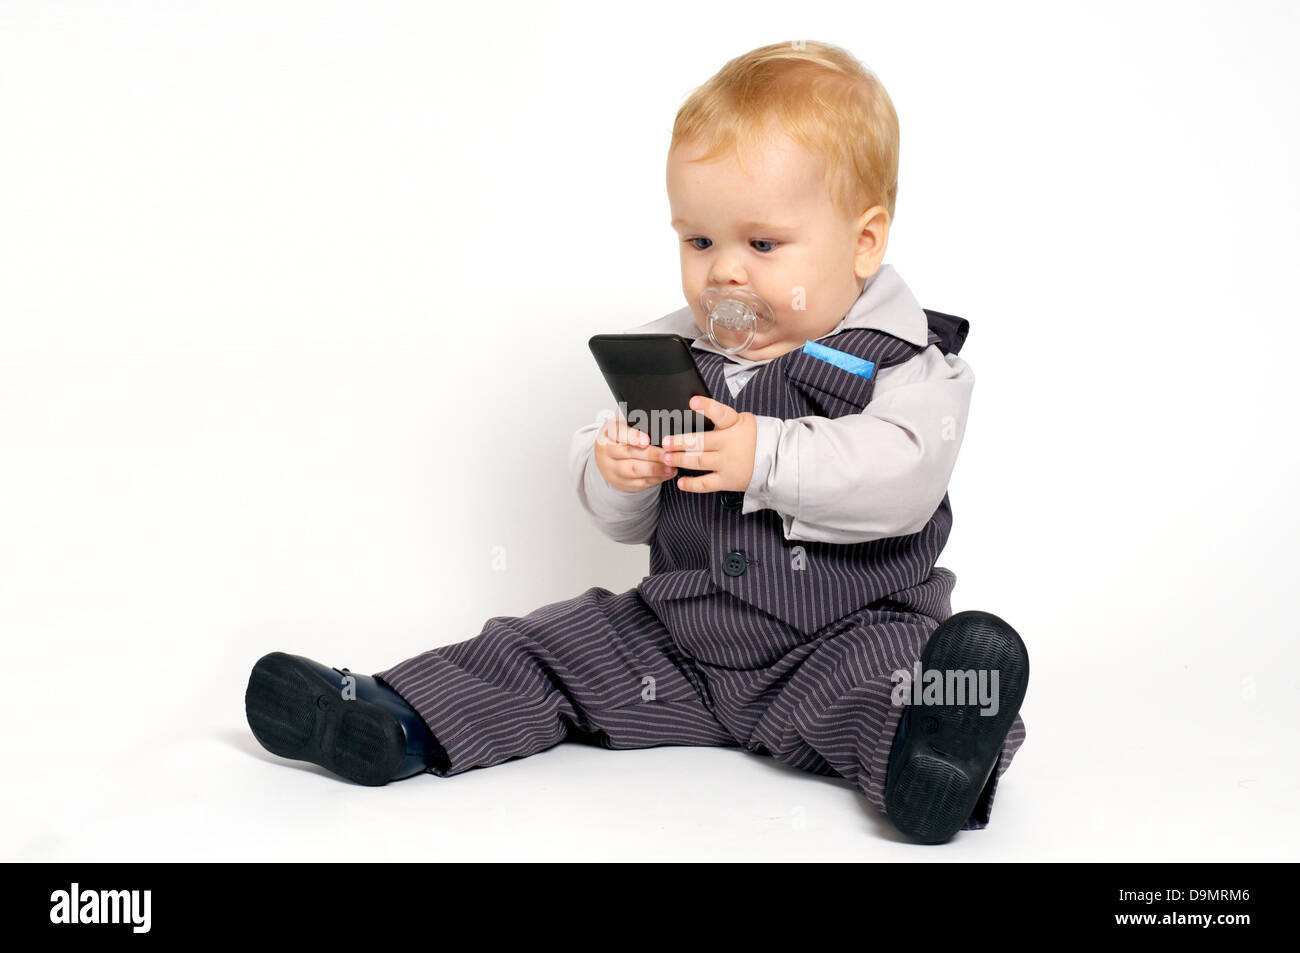 Blond bébé en fonction des sms avec un téléphone mobile Banque D'Images